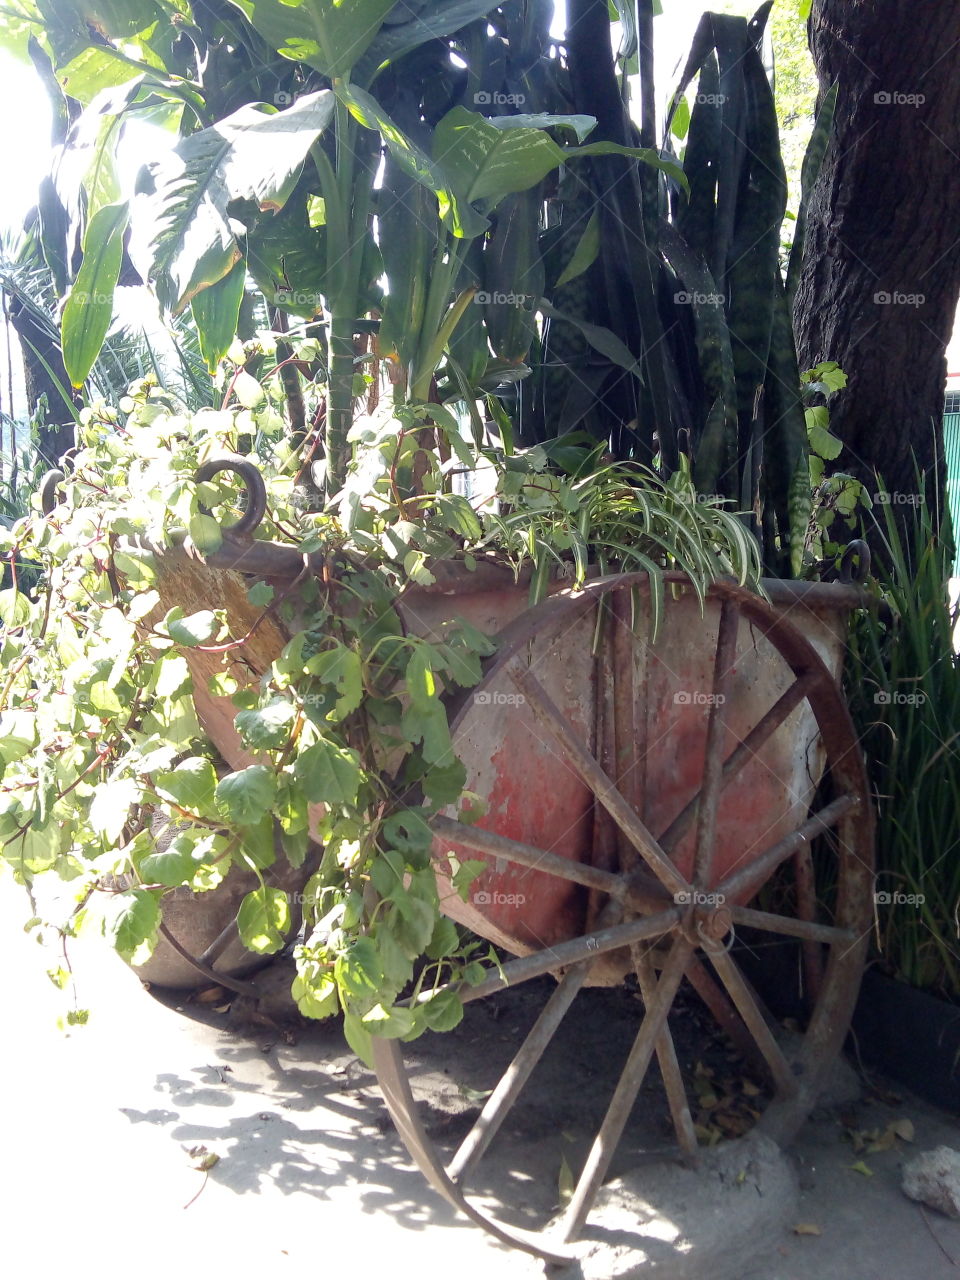 carretilla antigua de madera utilizada como macetero en la banqueta, en una de las colonias de la ciudad. con plantas en crecimiento.